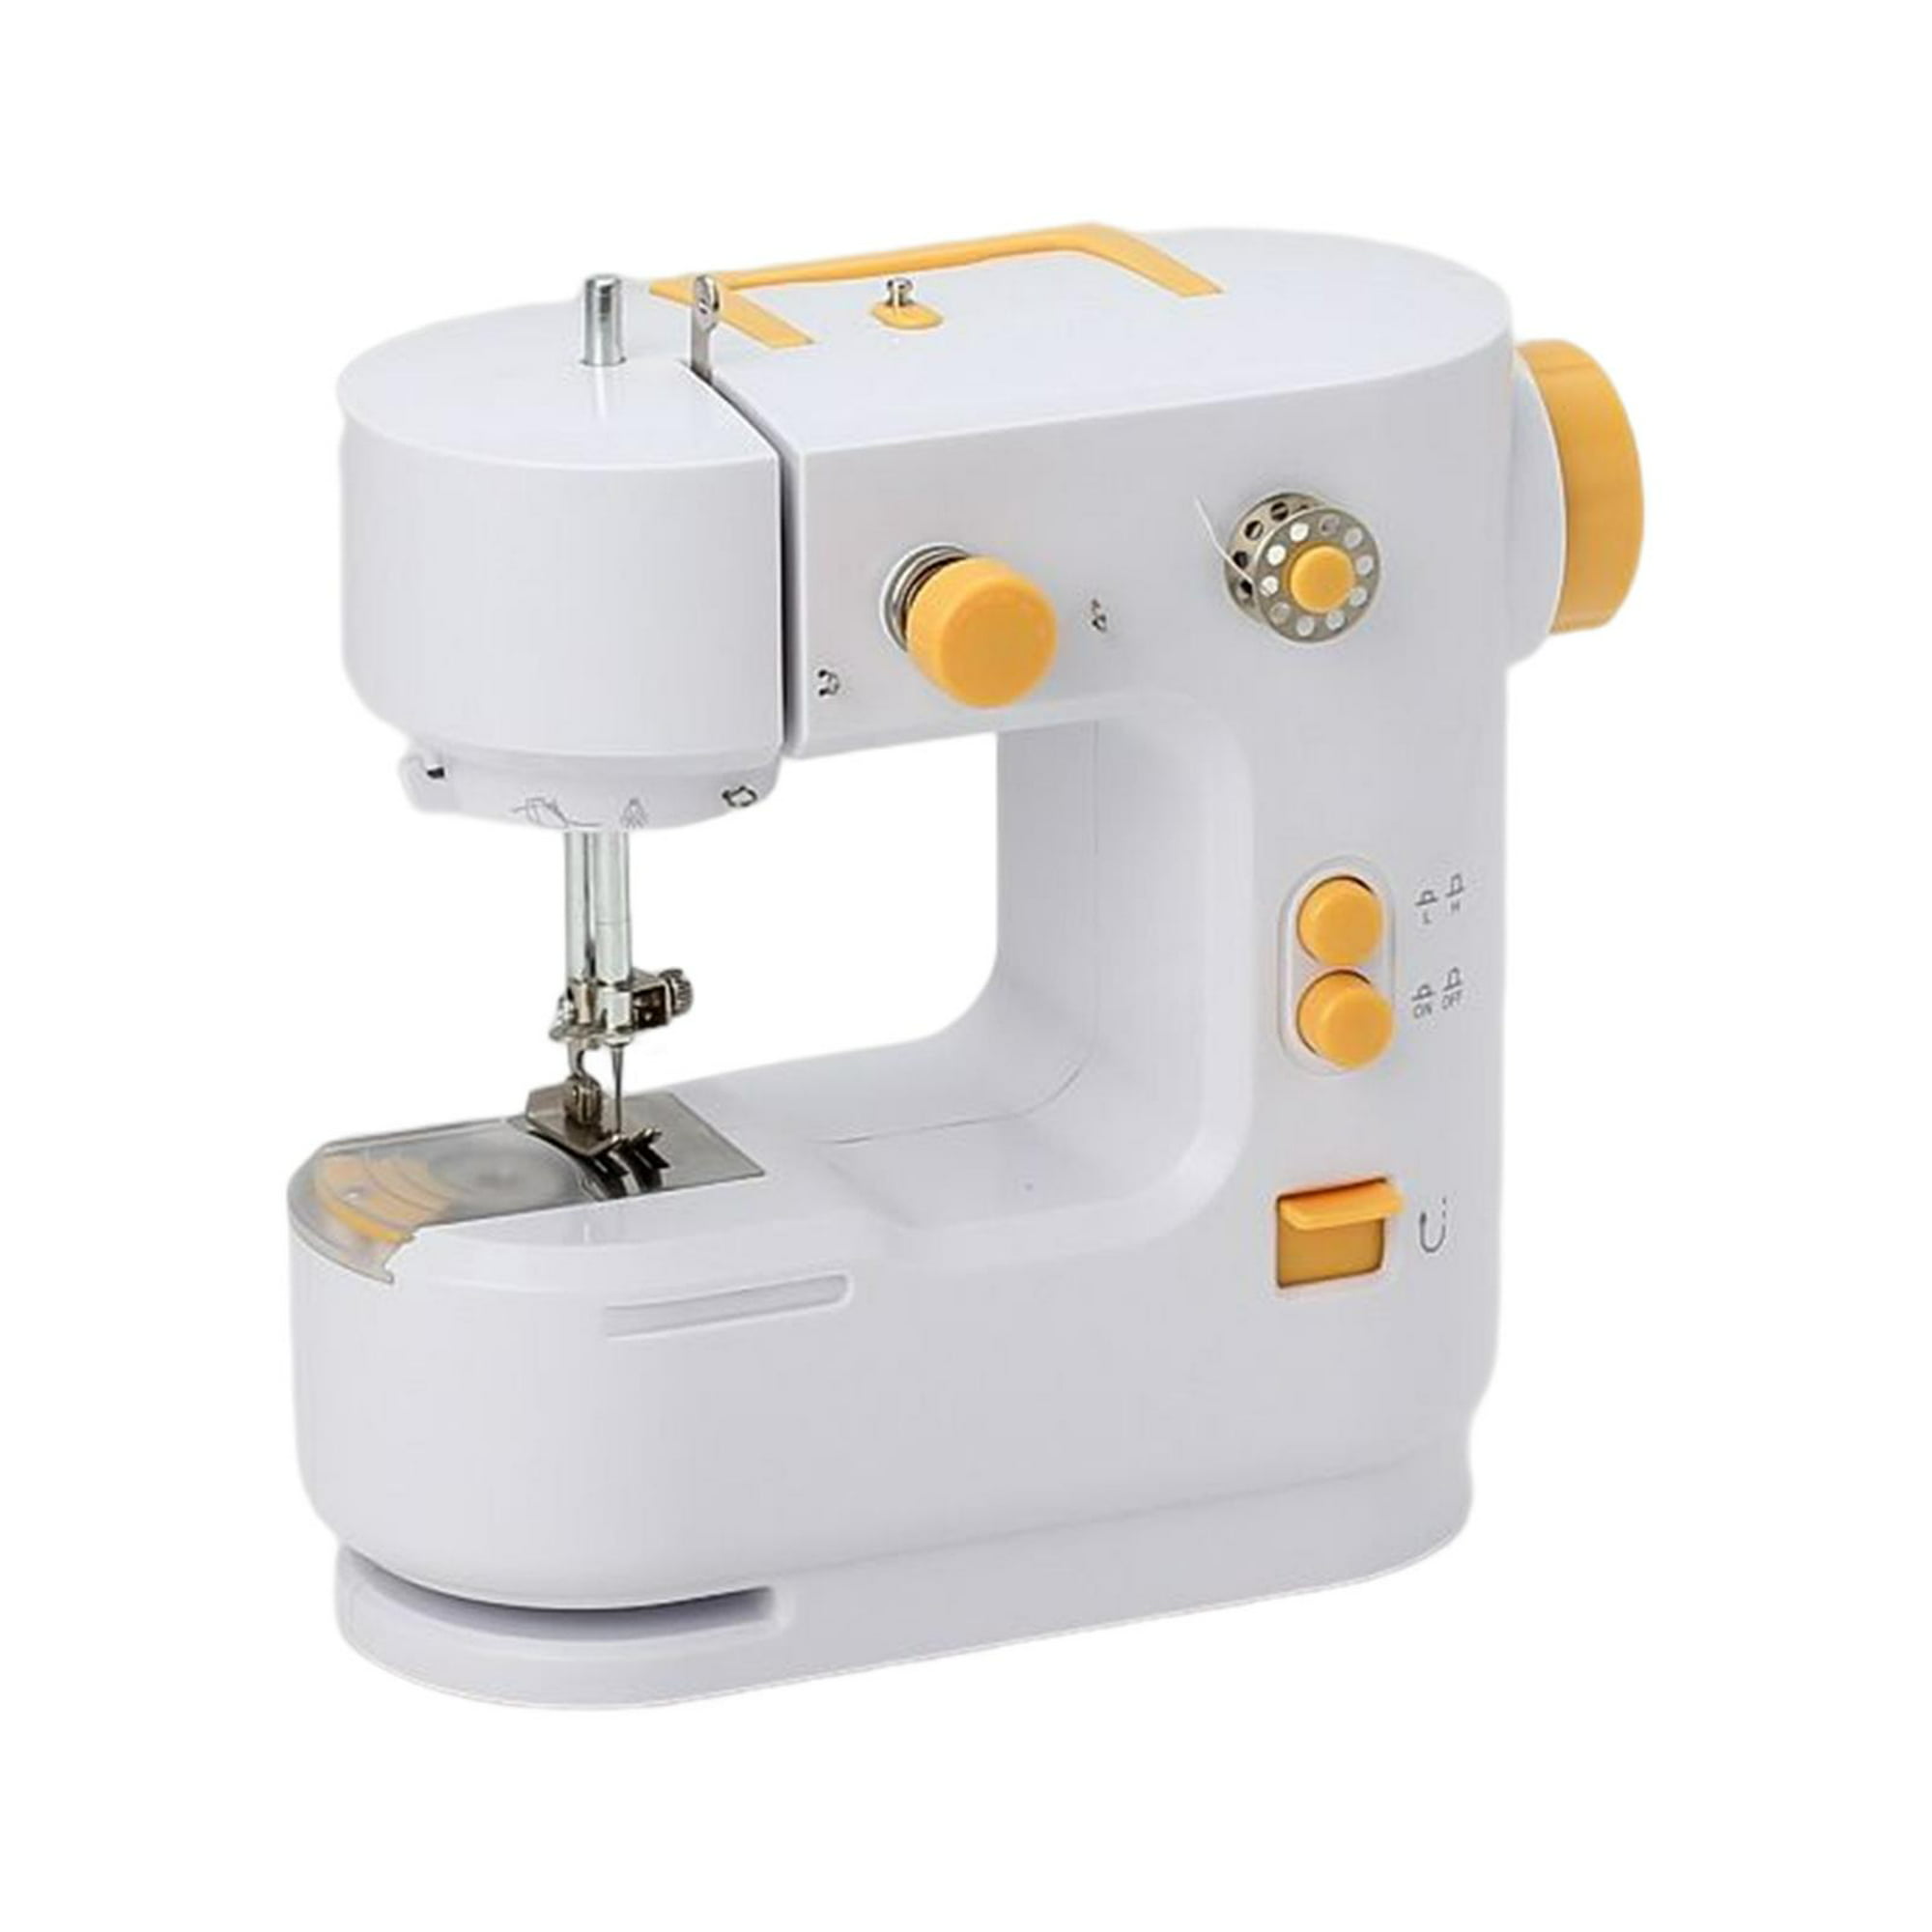 Mini máquina de coser Manual portátil para ropa herramientas de